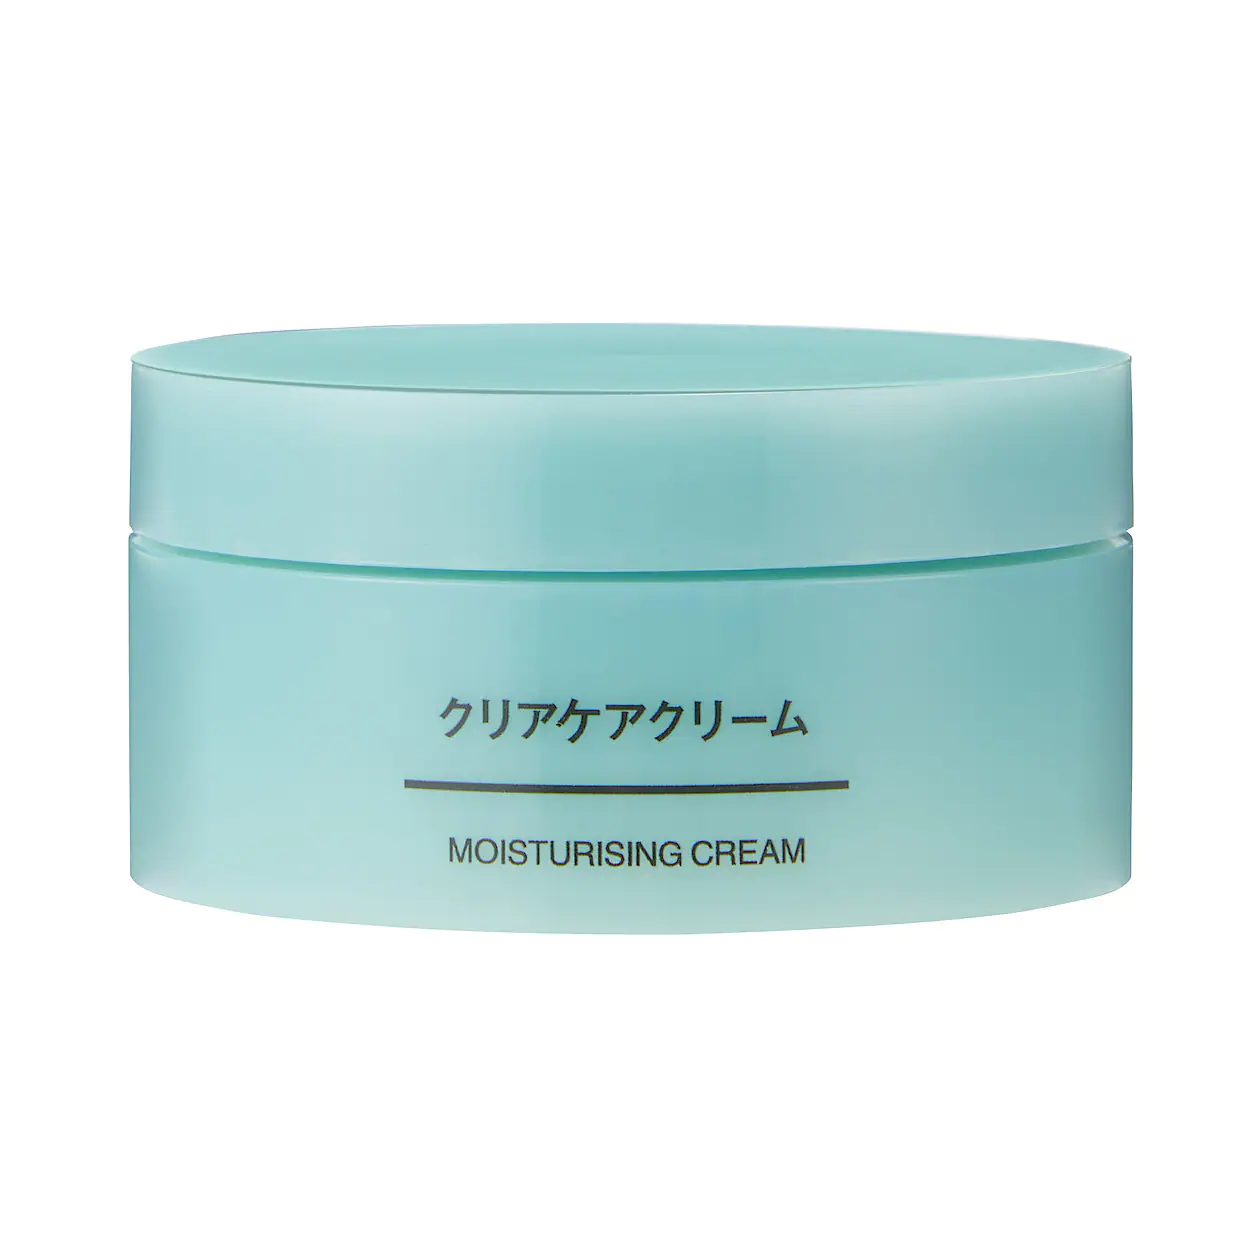 Увлажняющий крем для проблемной кожи MUJI Moisturising Cream Cleansing Care